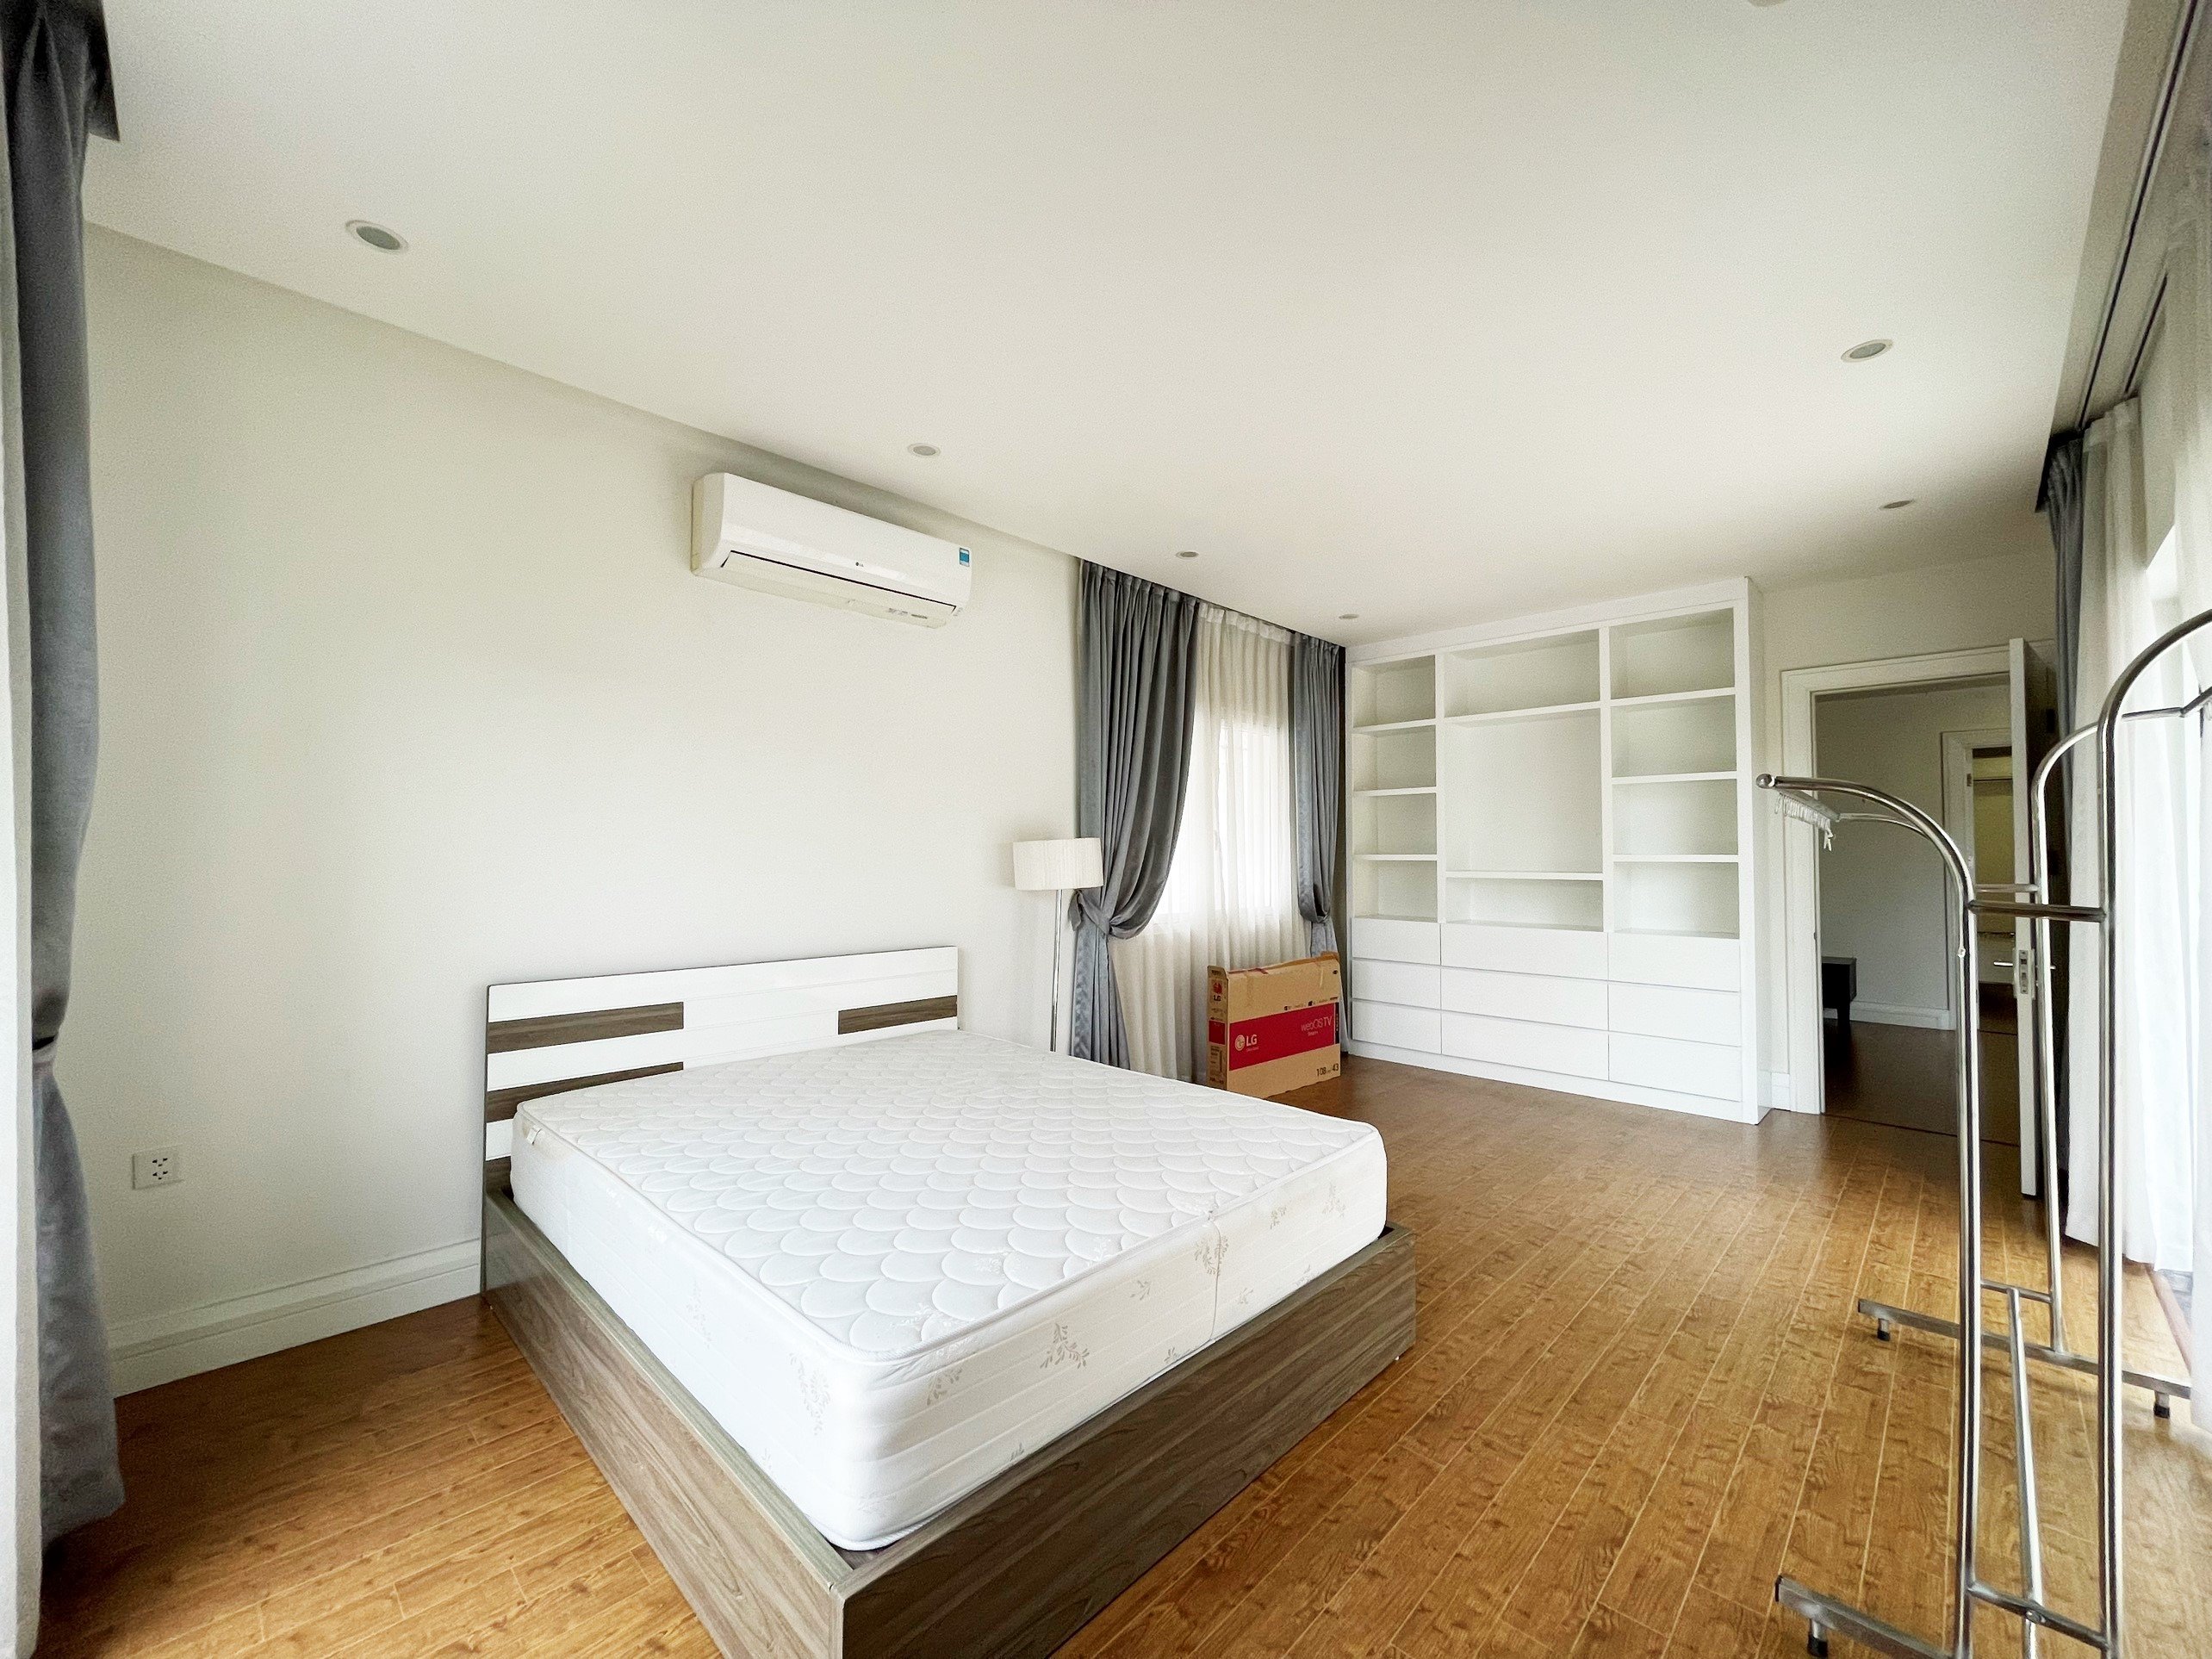 4 bedroom villa for rent in Hoa Sua block, Vinhomes Riverside, Long Bien district 17